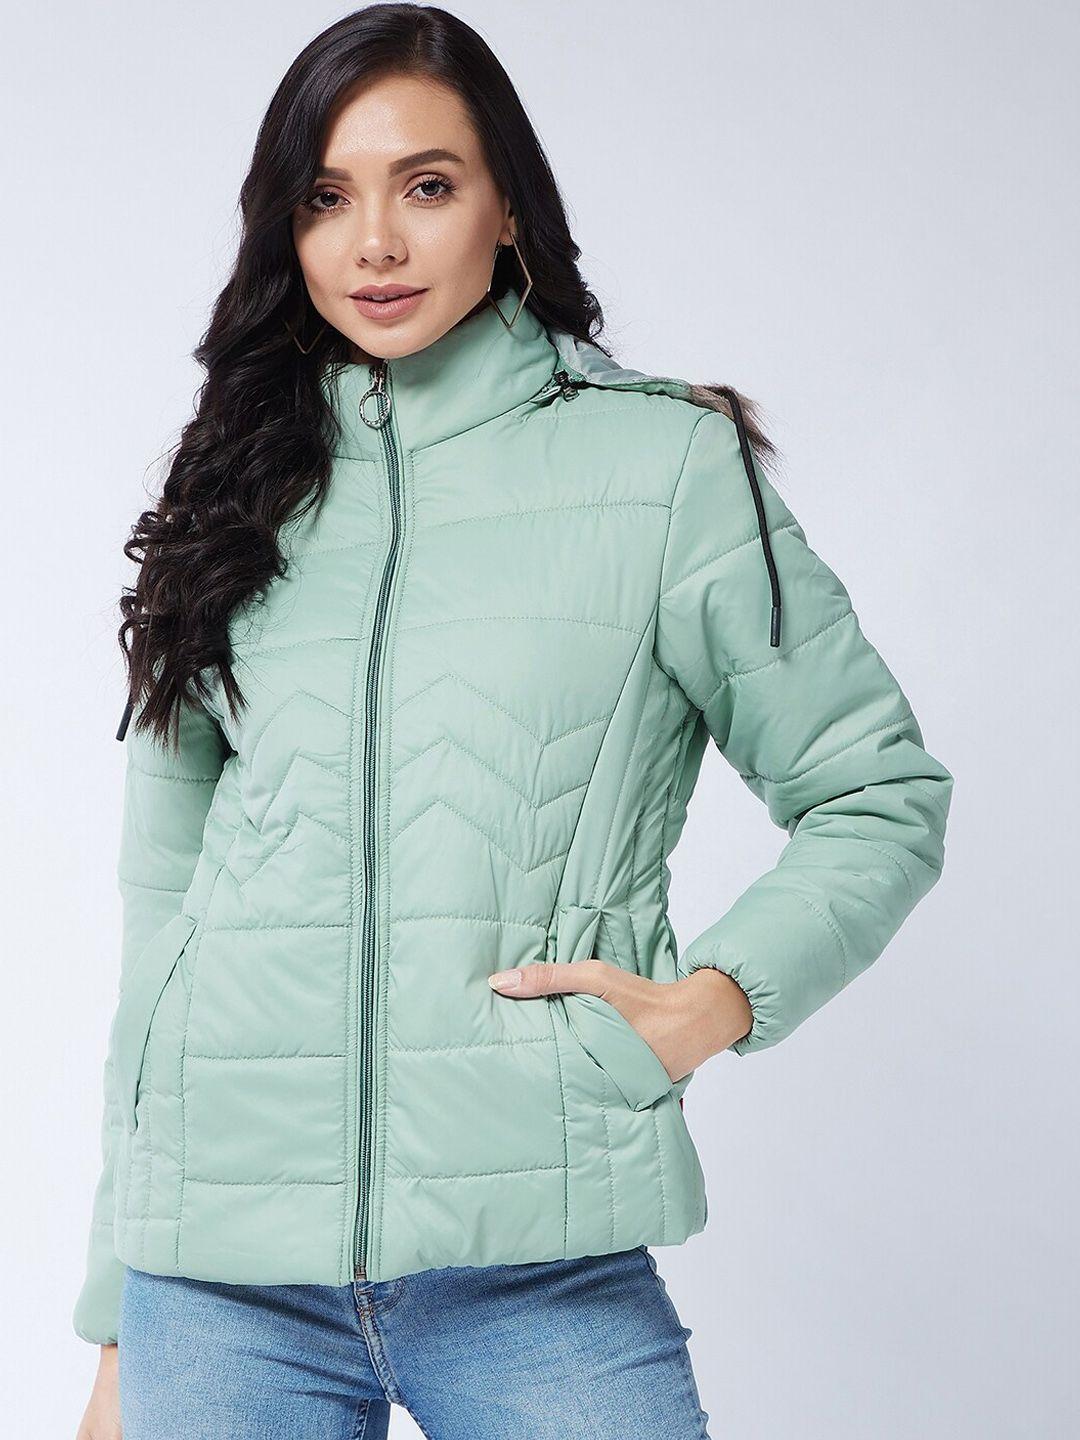 modeve women green lightweight parka jacket